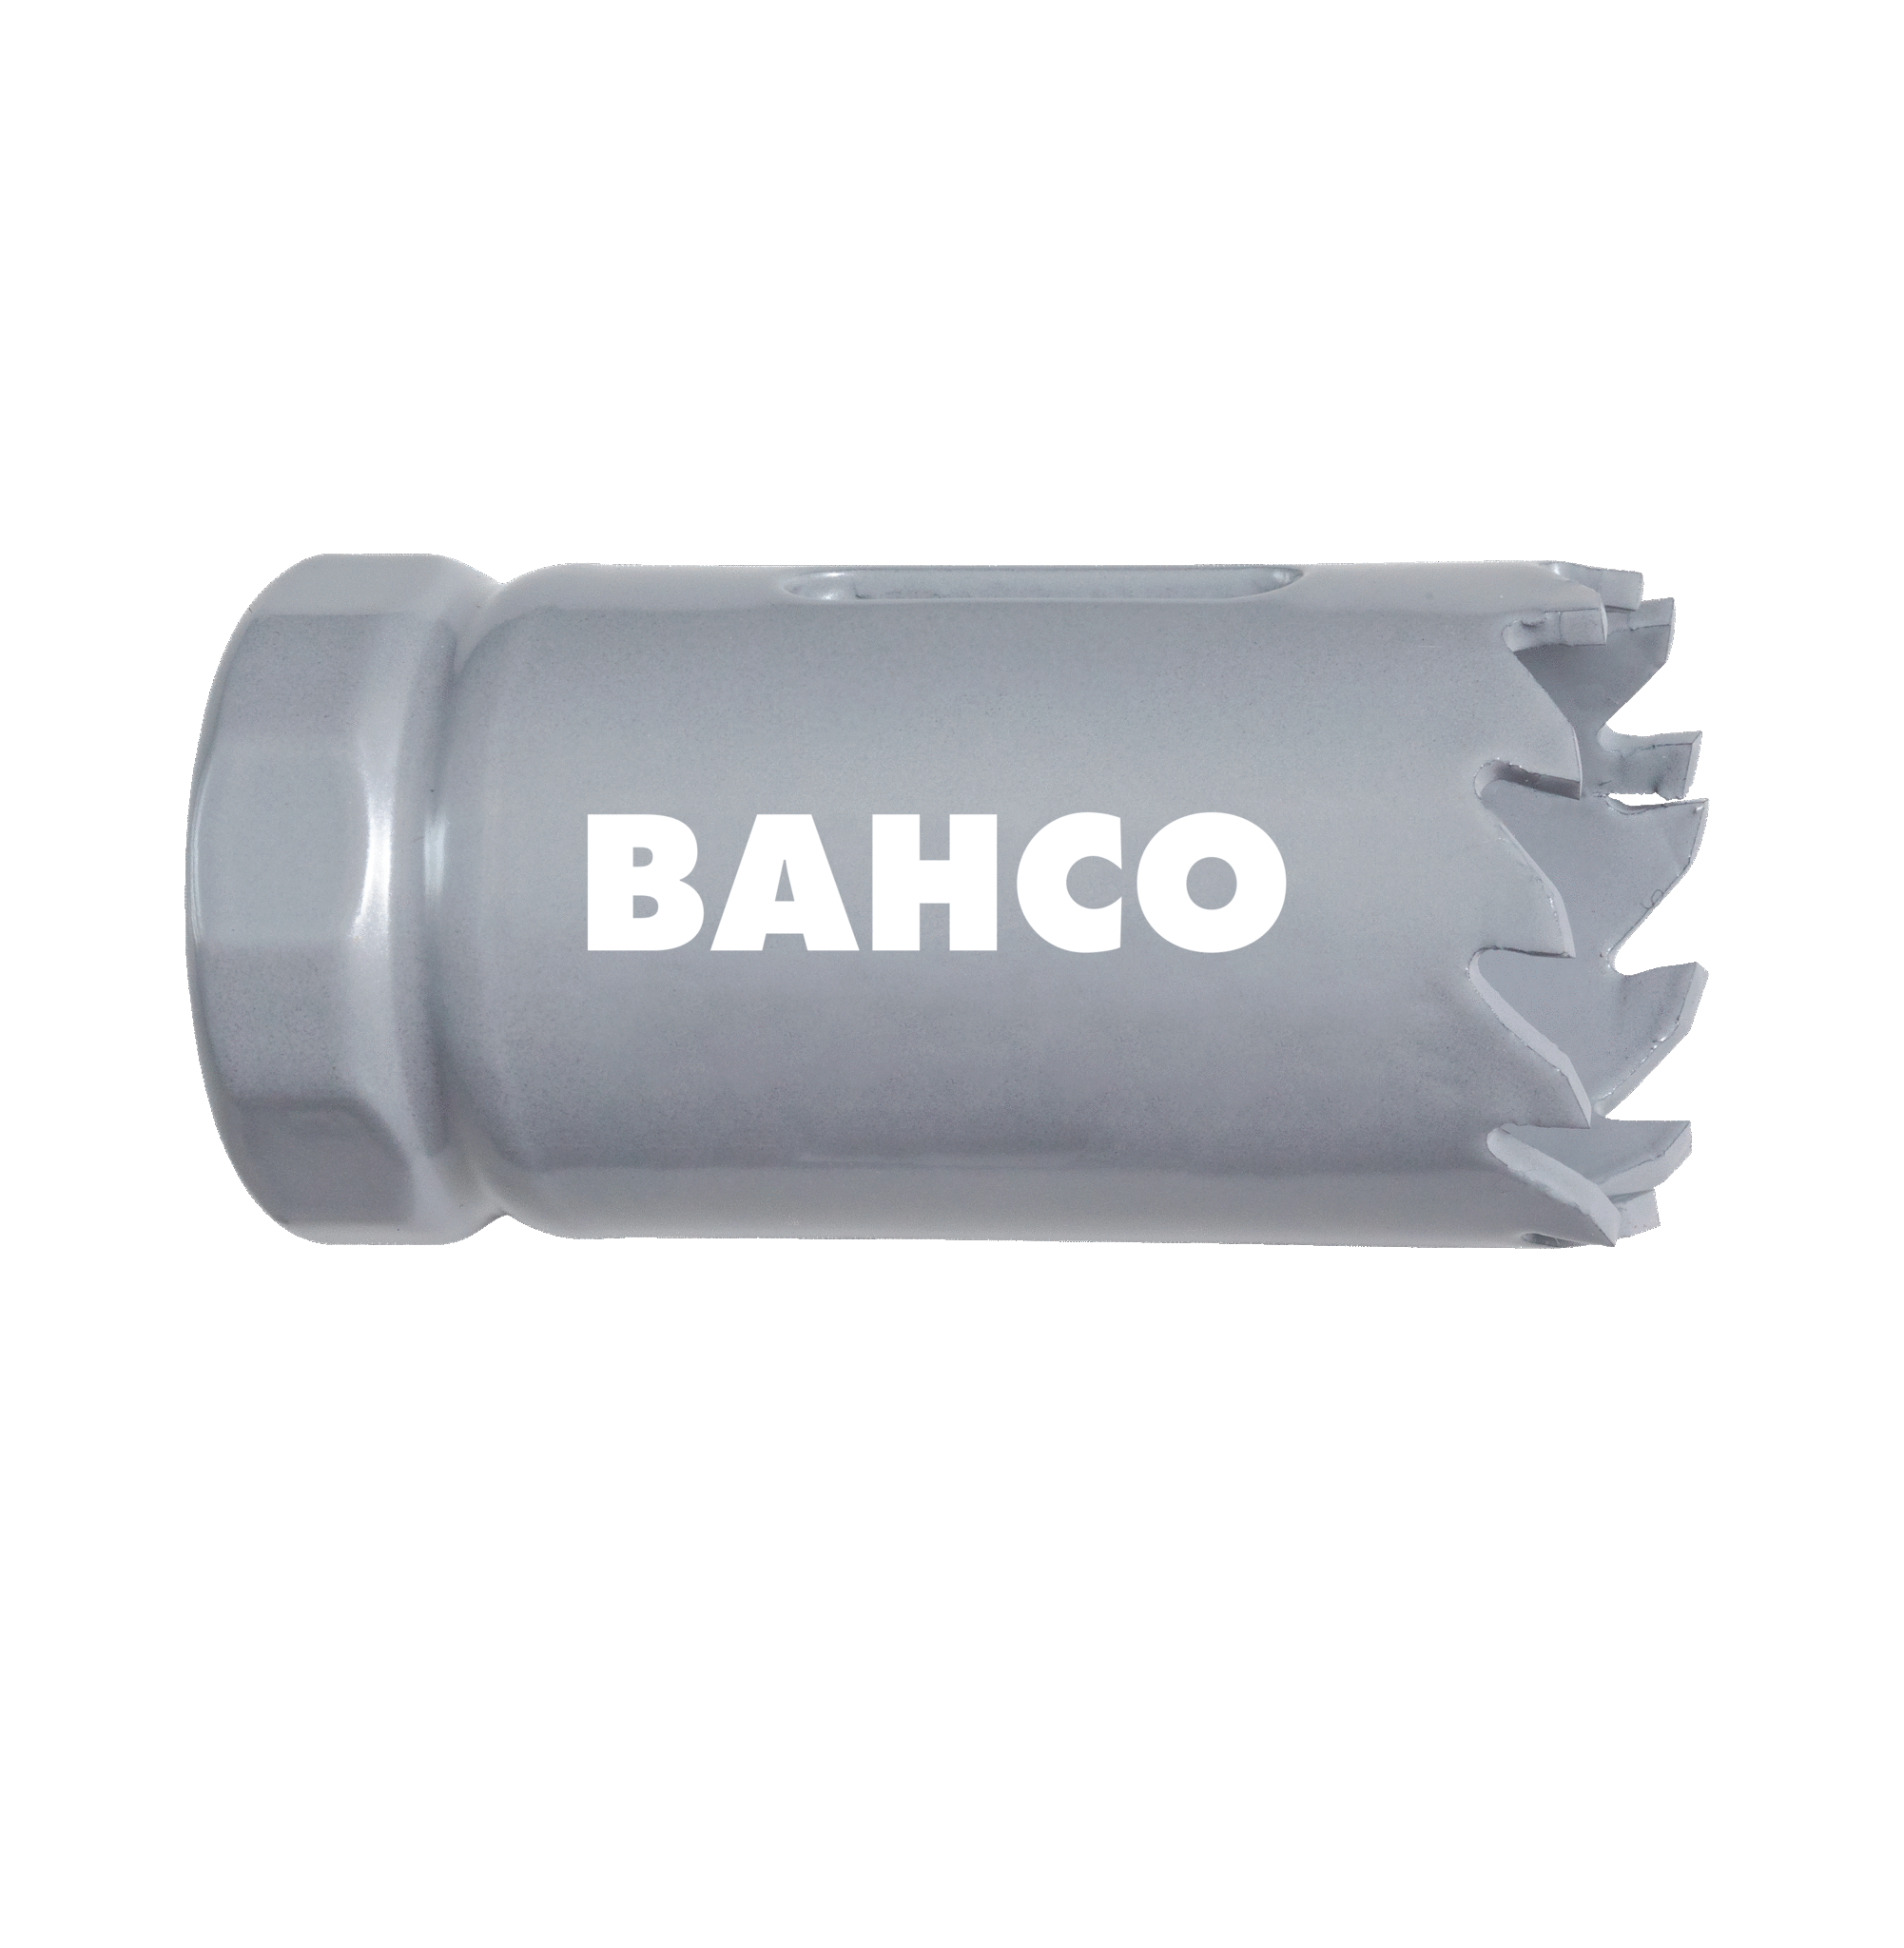 Кольцевые пилы с твердосплавными напайками BAHCO 3832-33